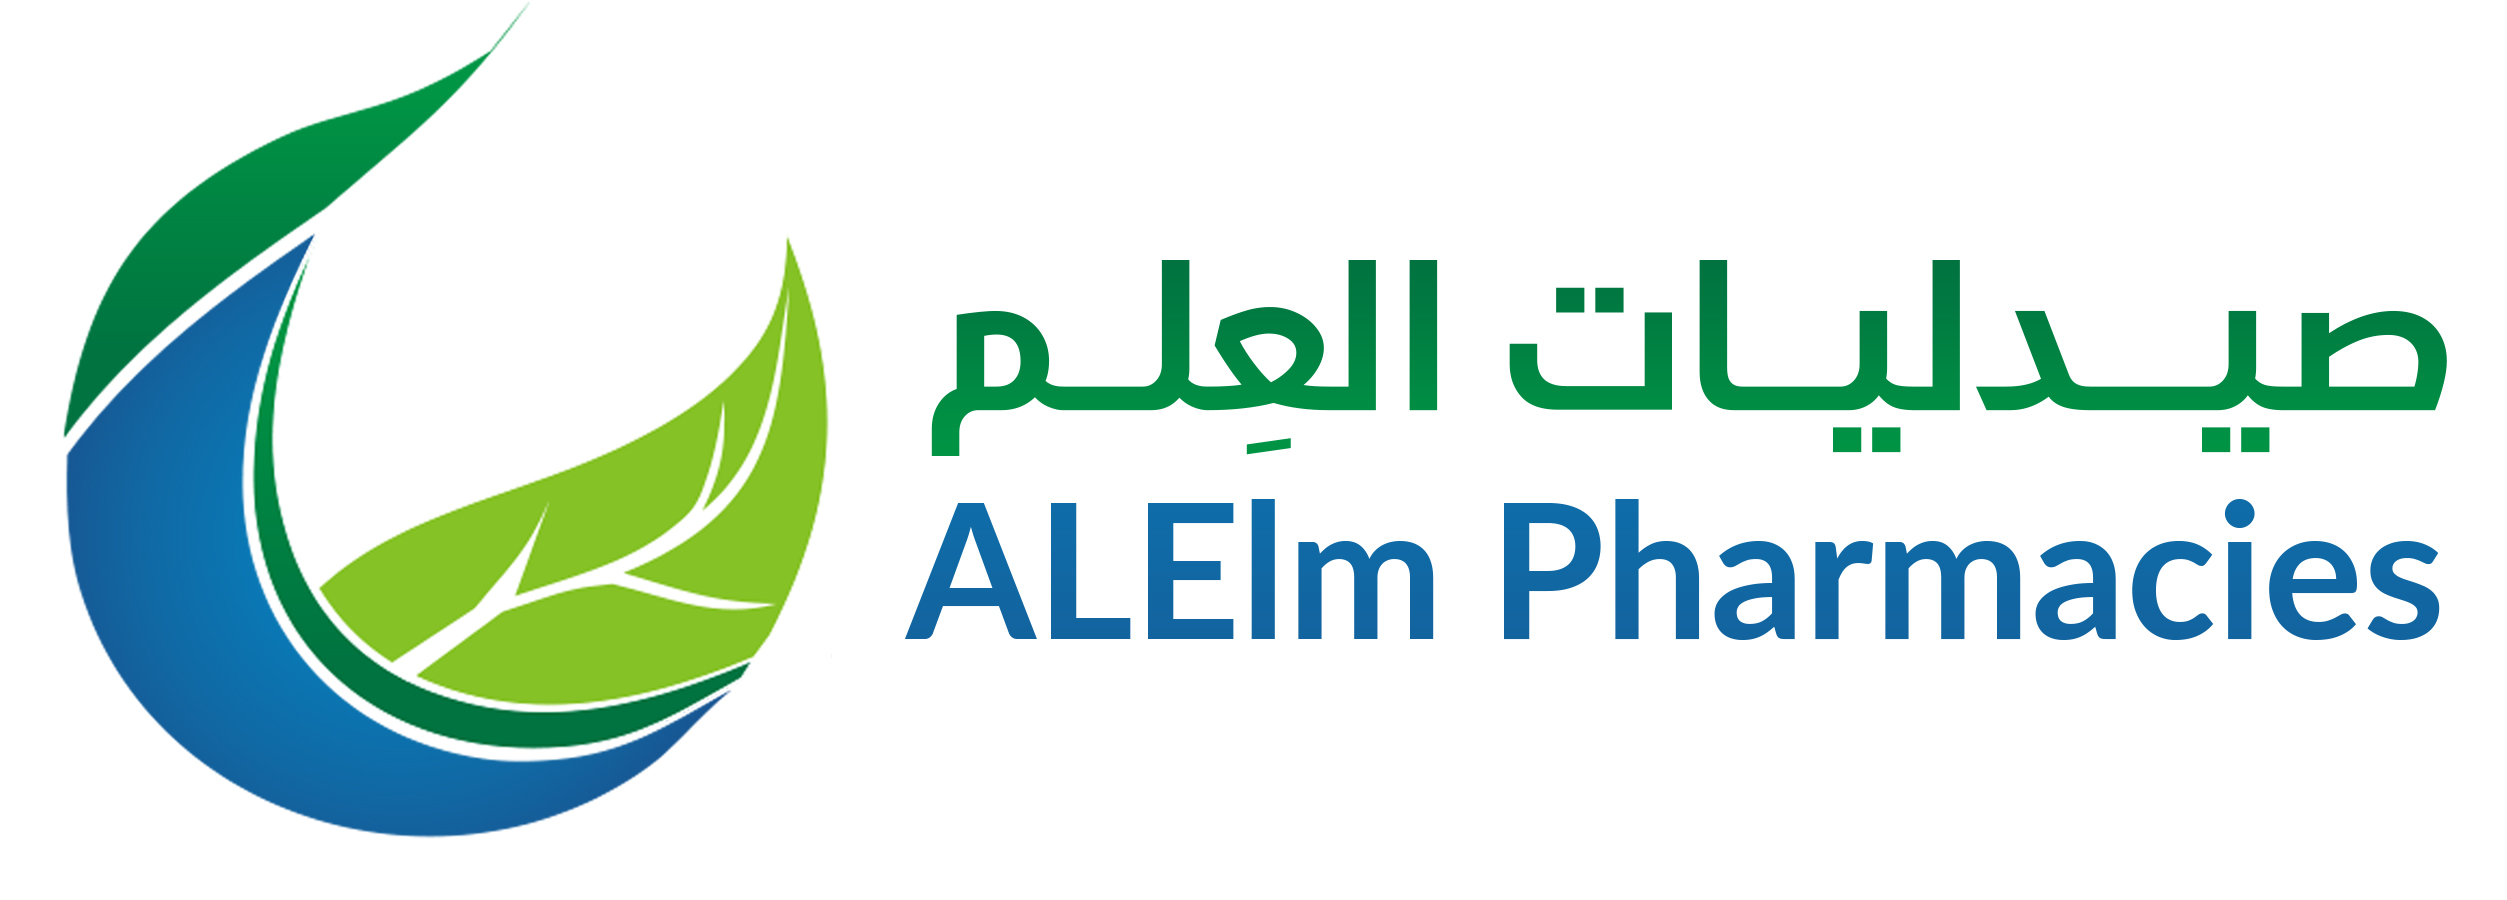 Al-Elm